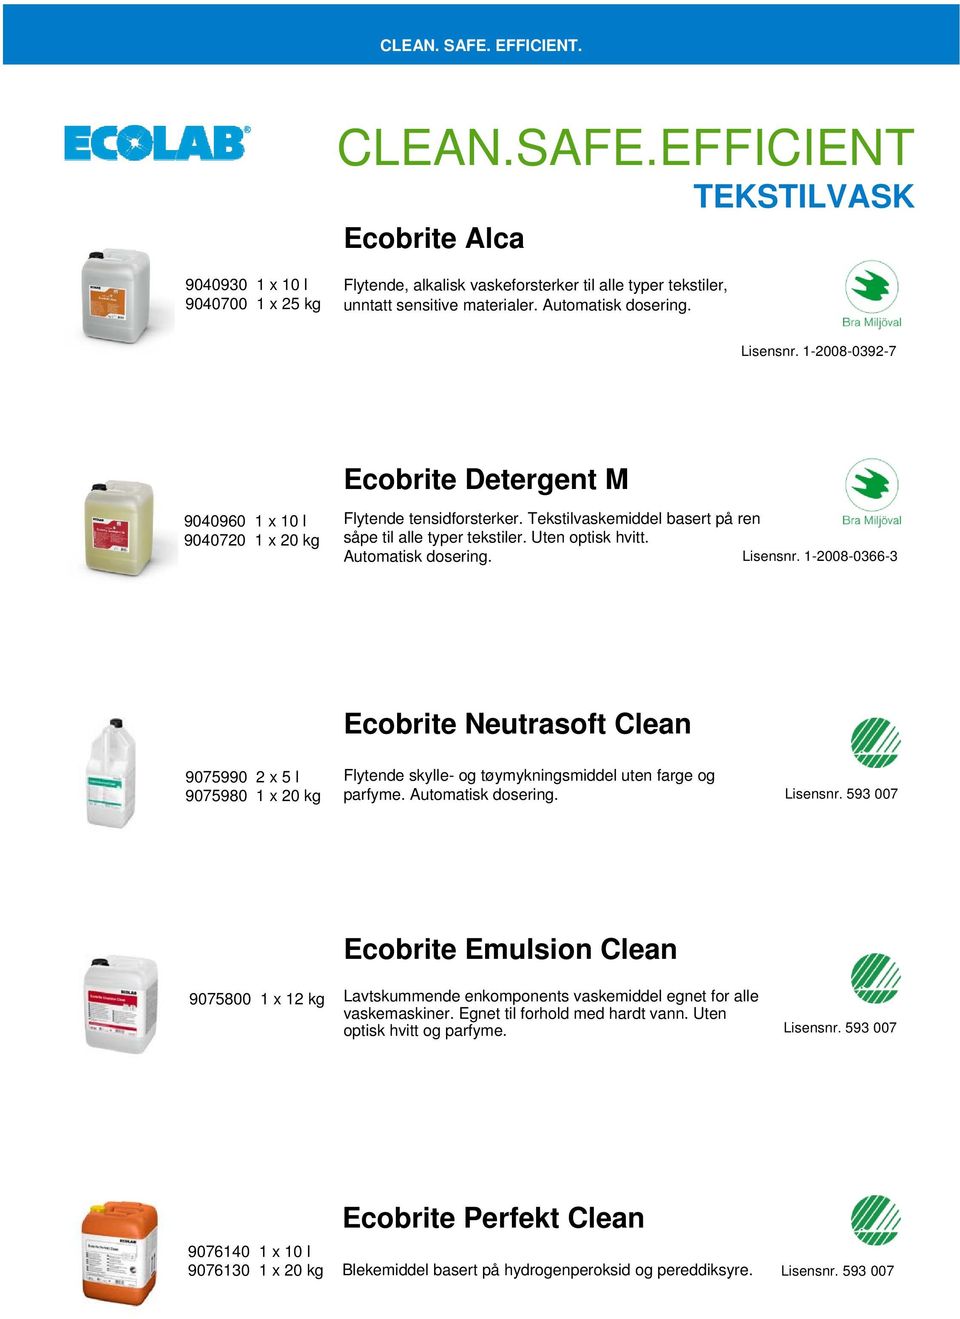 Lisensnr. 1-2008-0366-3 Ecobrite Neutrasoft Clean 9075990 2 x 5 l 9075980 1 x 20 kg Flytende skylle- og tøymykningsmiddel uten farge og parfyme. Automatisk dosering. Lisensnr.